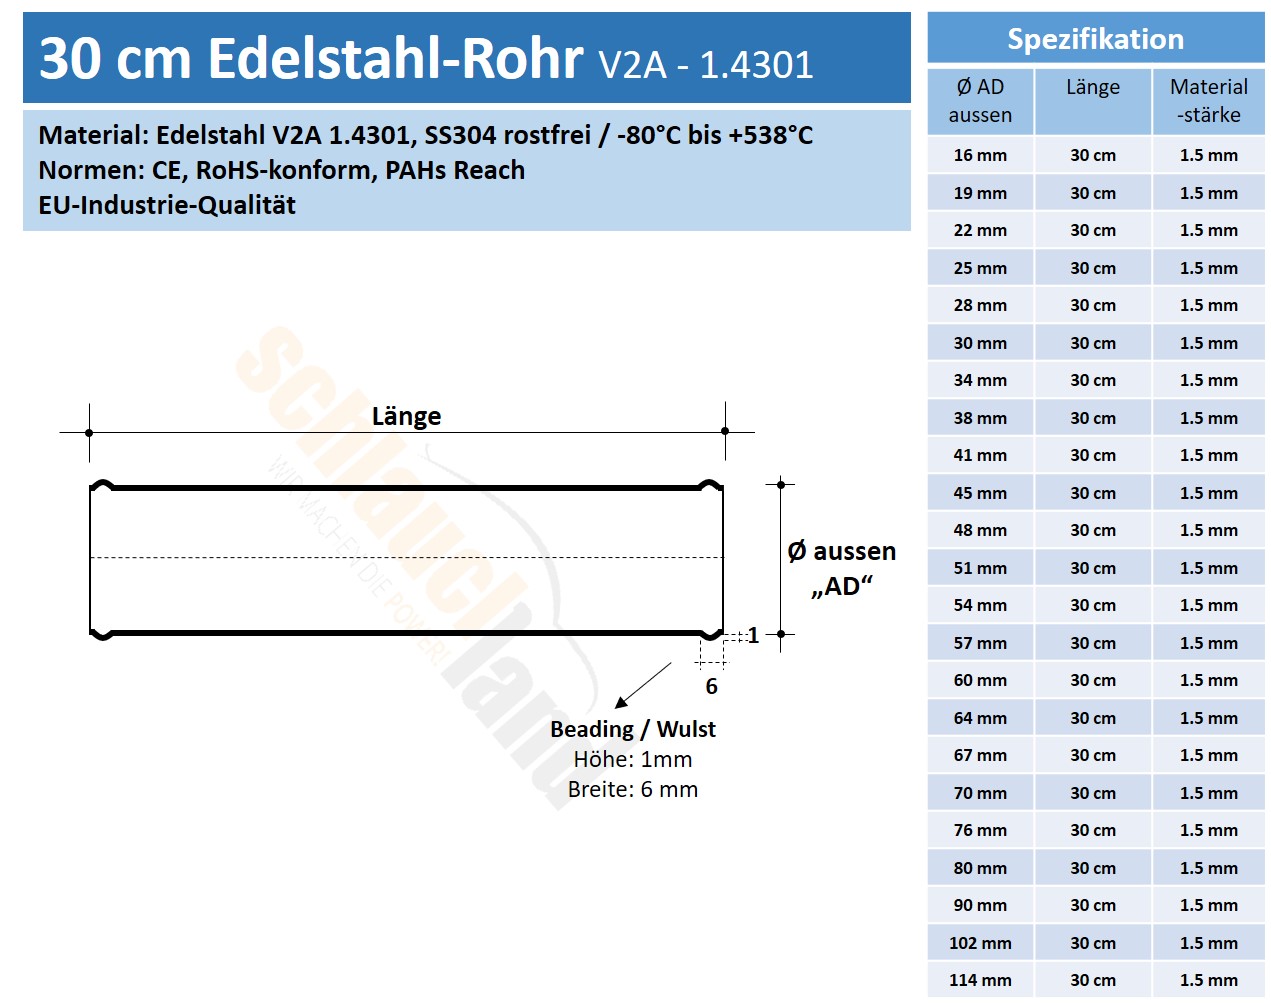 Datenblatt Edelstahl-Rohr 30cm V2A